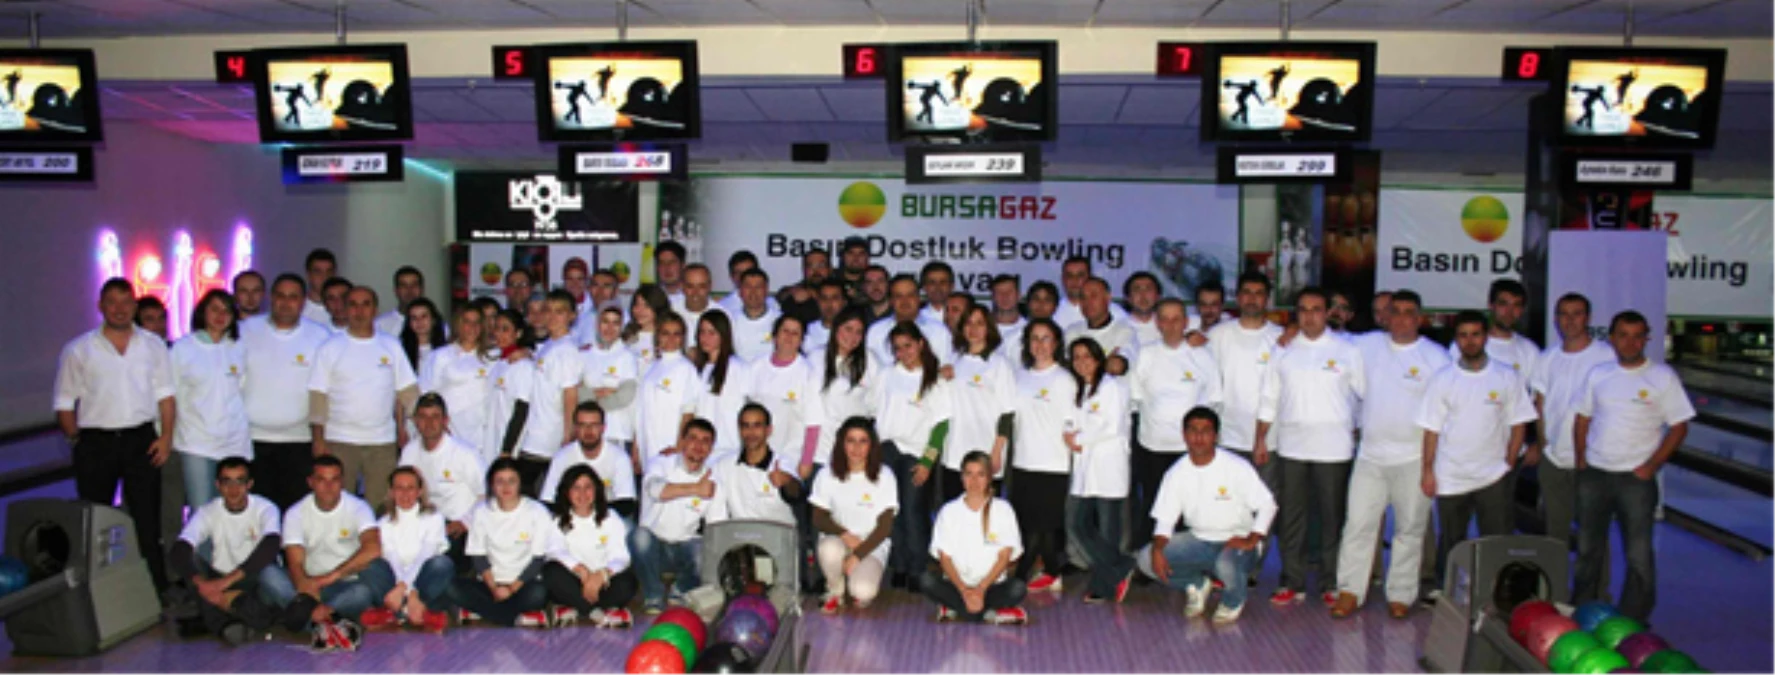 Bursagaz\'dan Basın Dostluk Bowling Turnuvası